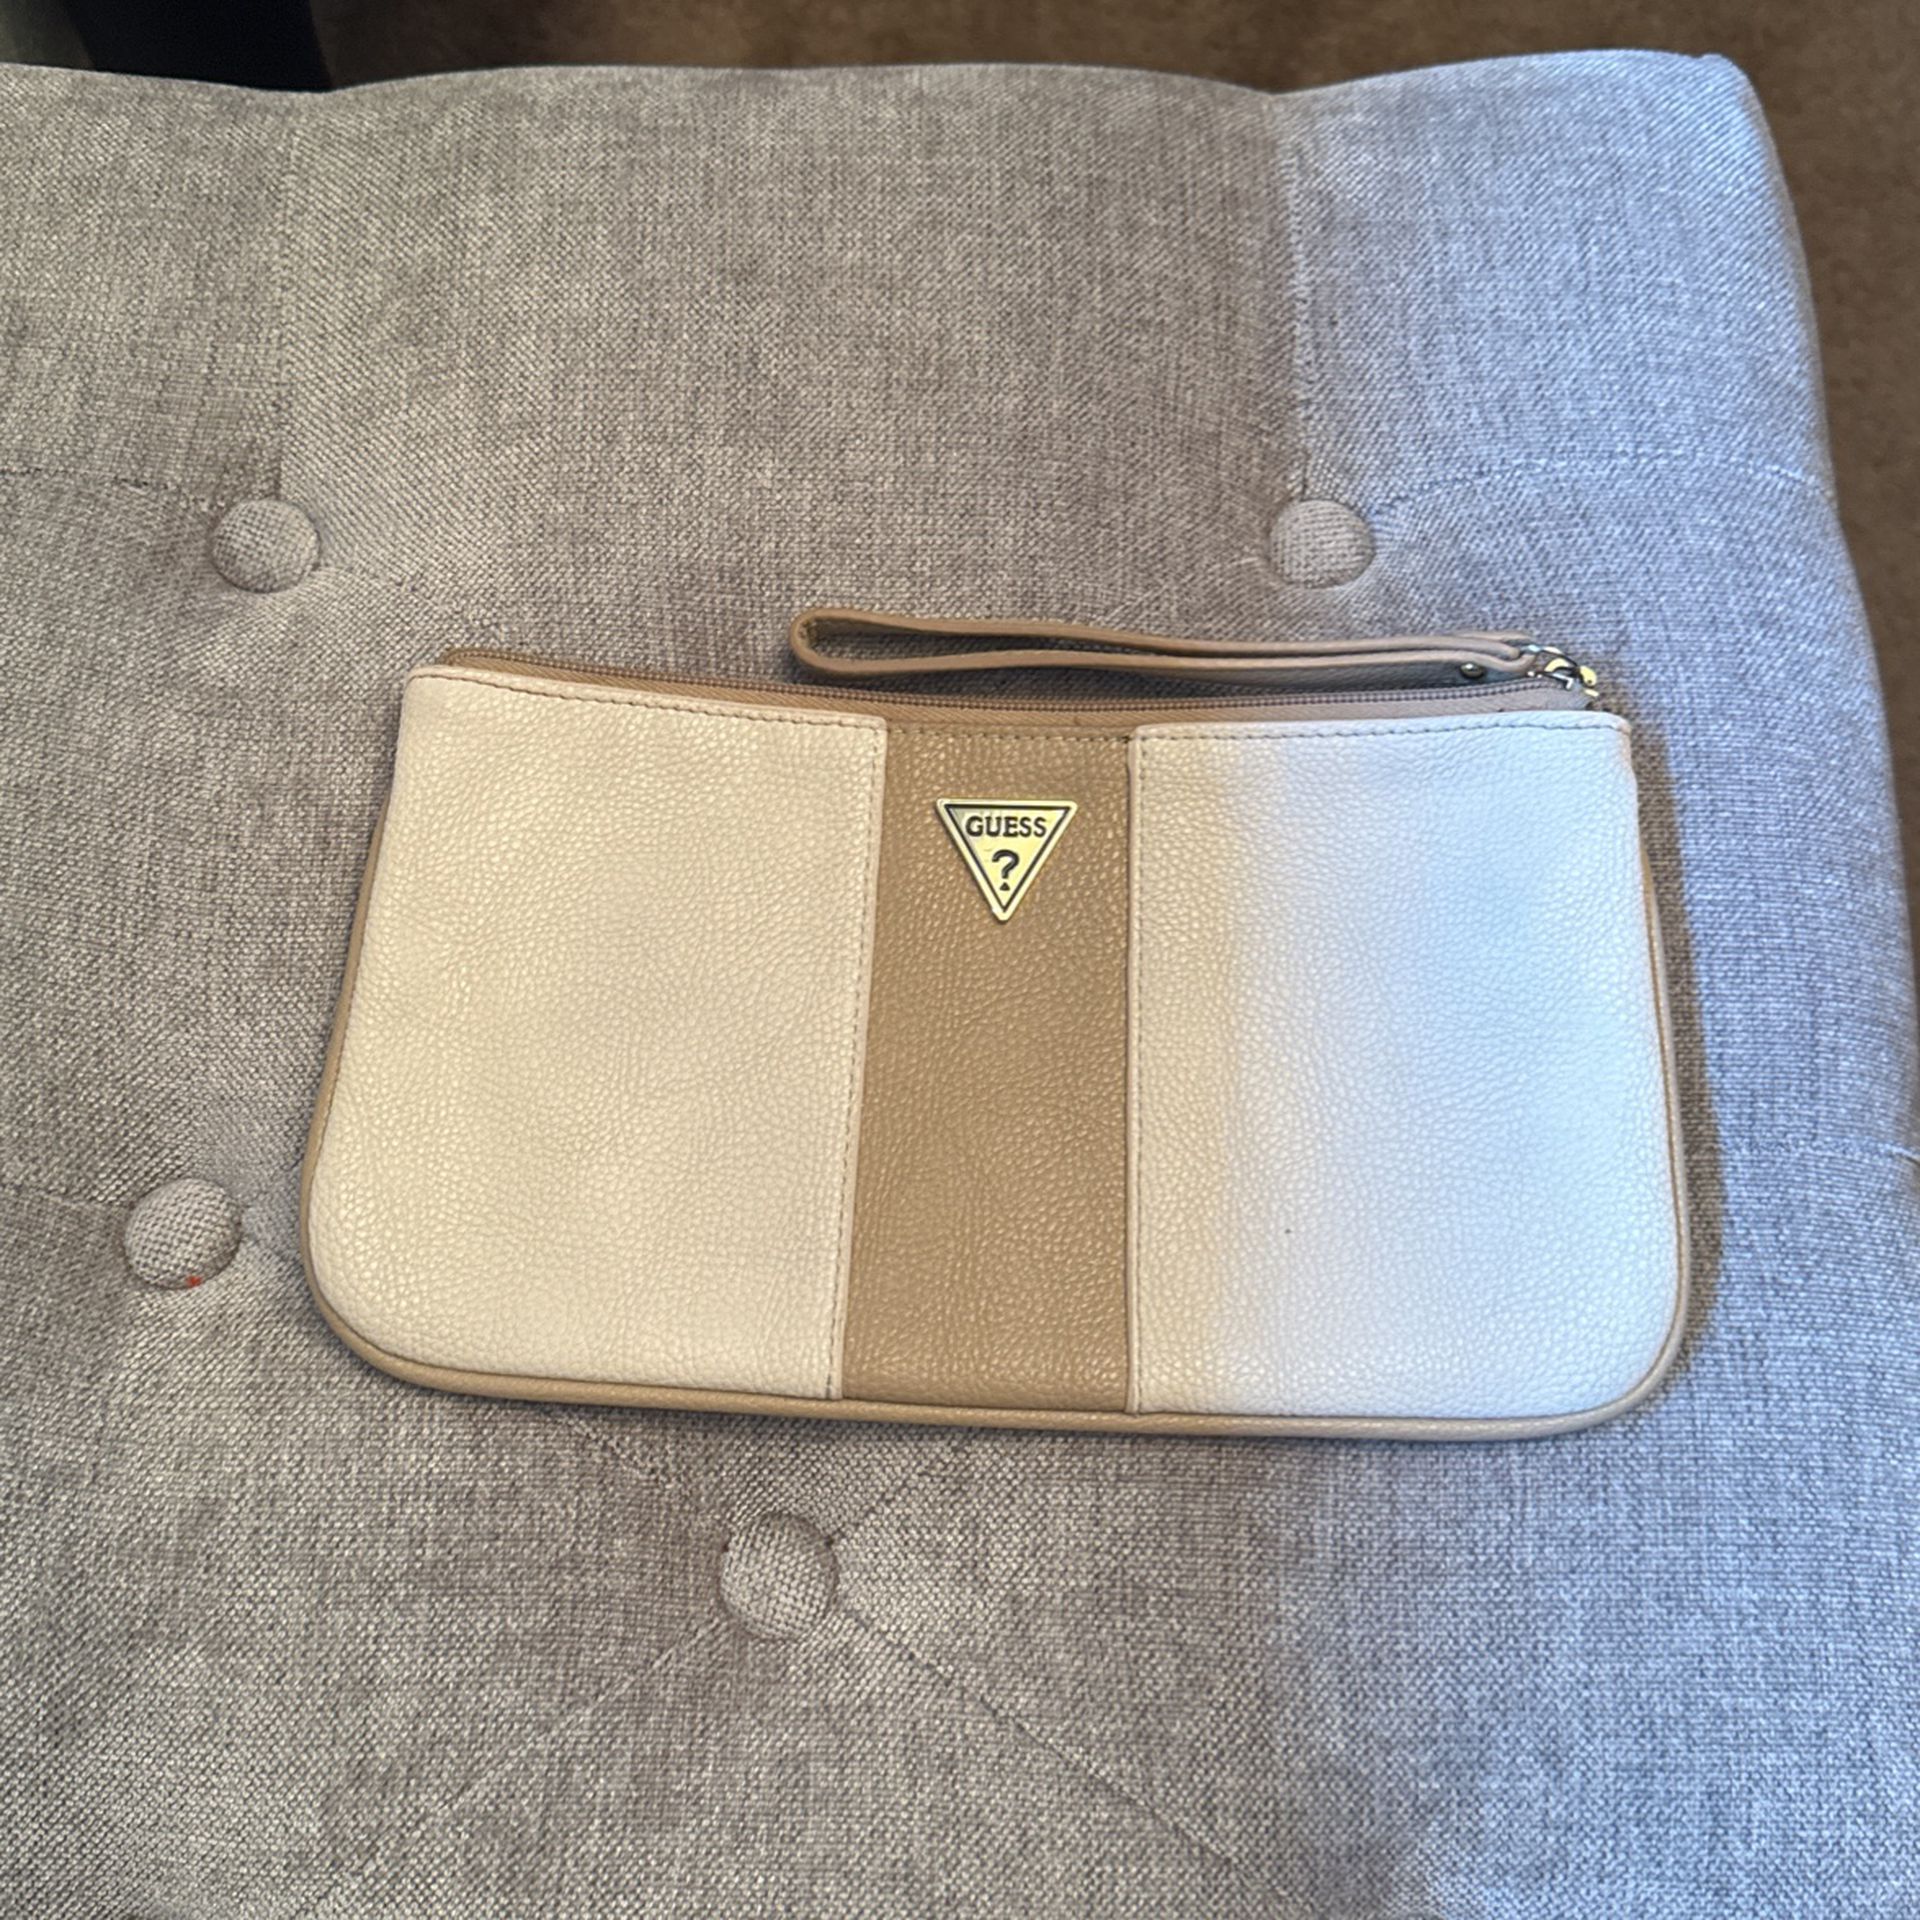 Guess Clutch Purse Wallet Small Handbag Beige